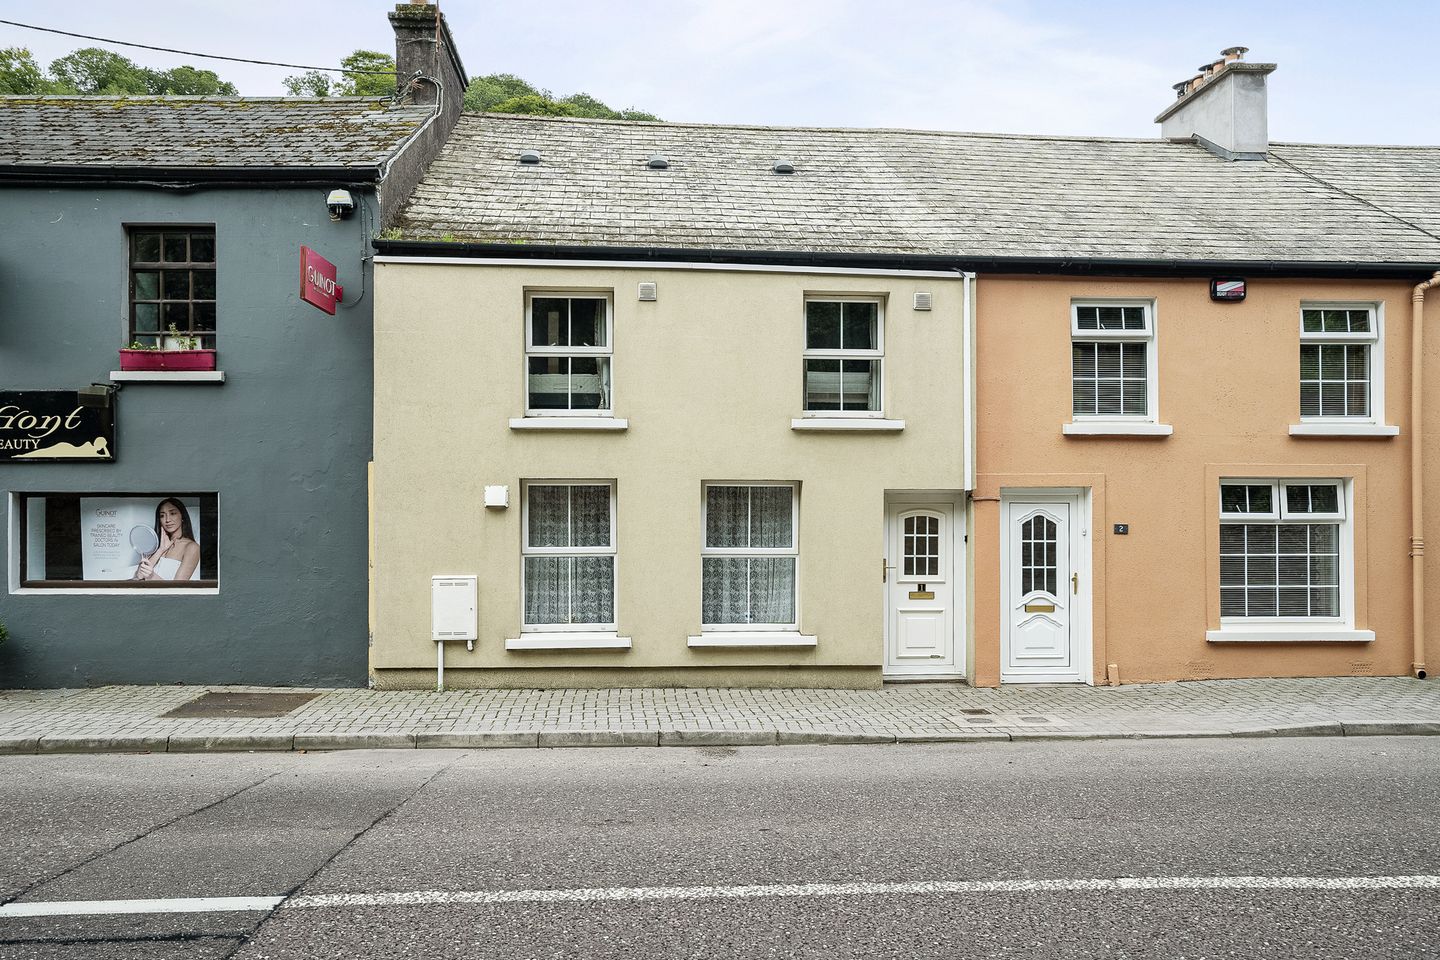 1 Barry's Terrace, Glanmire, Co. Cork, T45EP95